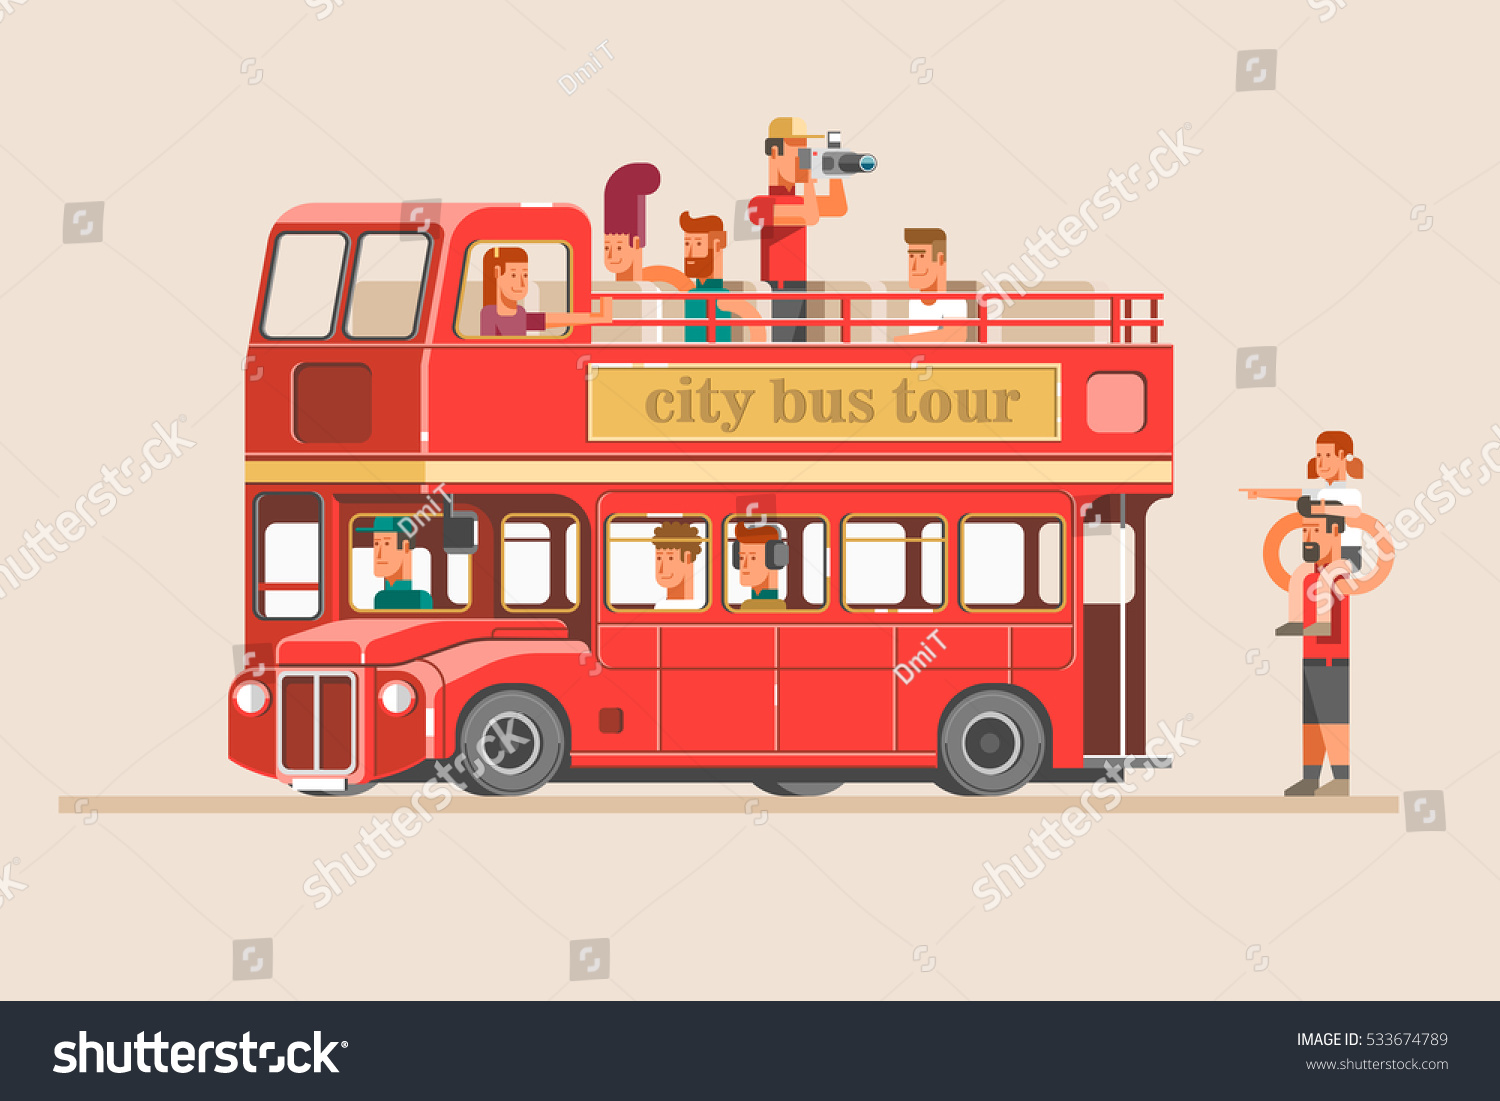 관광버스, 버스, 관광